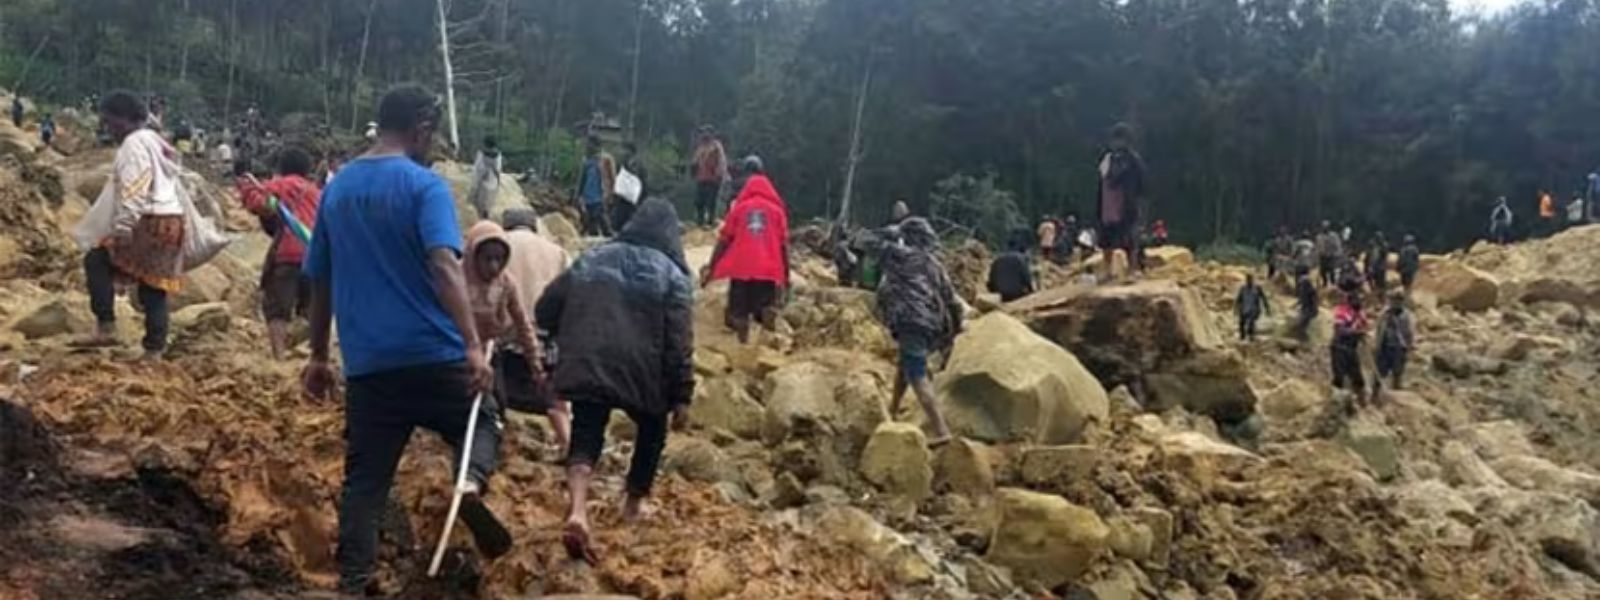 UN raises Papua New Guinea landslide death toll